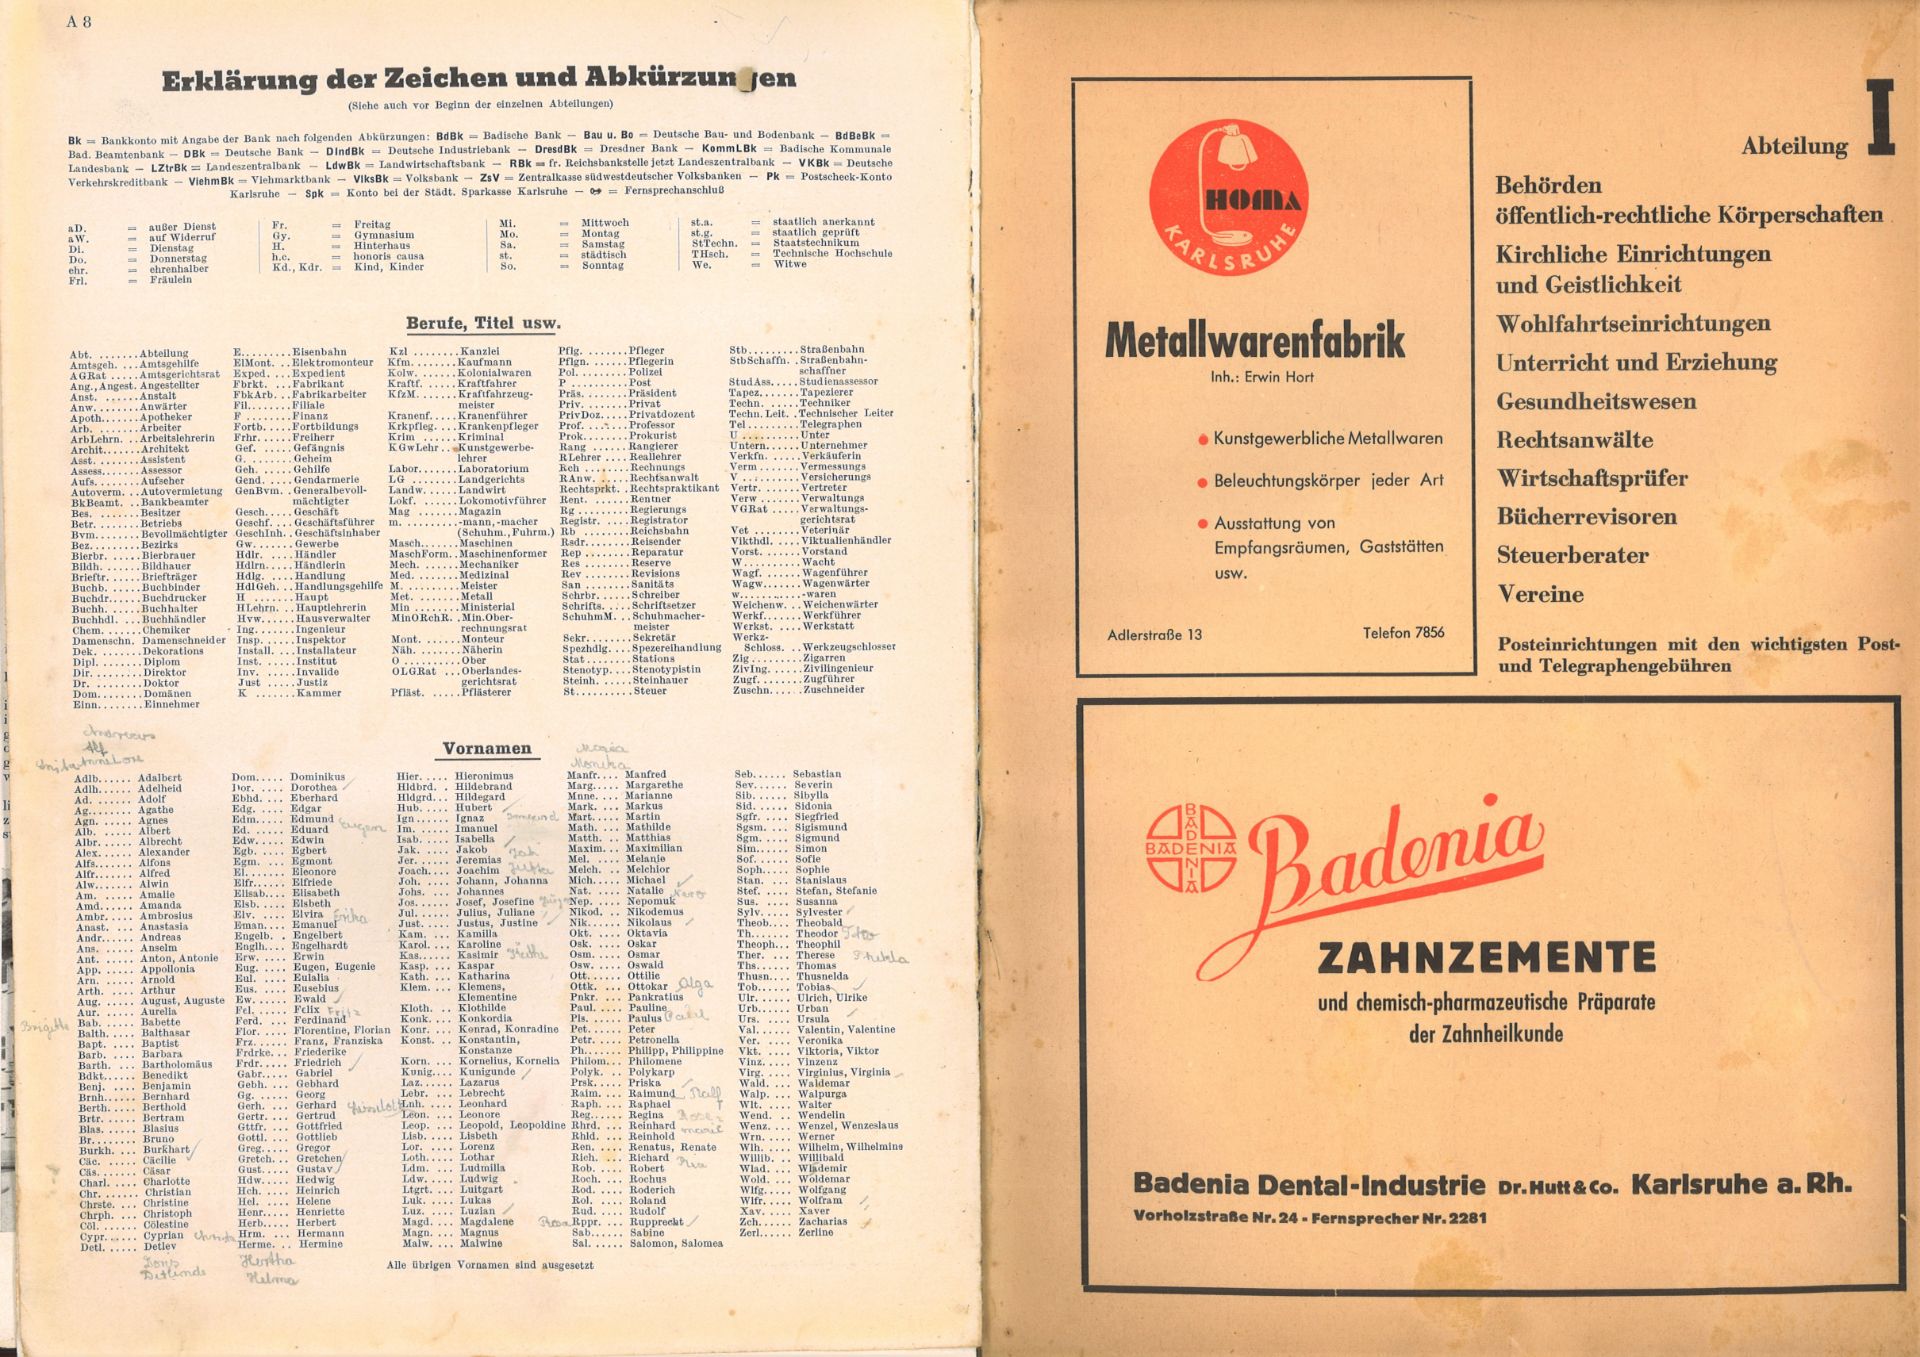 Adressbuch der Stadt Karlsruhe von 1947, zweiundsiebzigster Jahrgang, Adressbuchverlag G. Braun, - Bild 2 aus 2